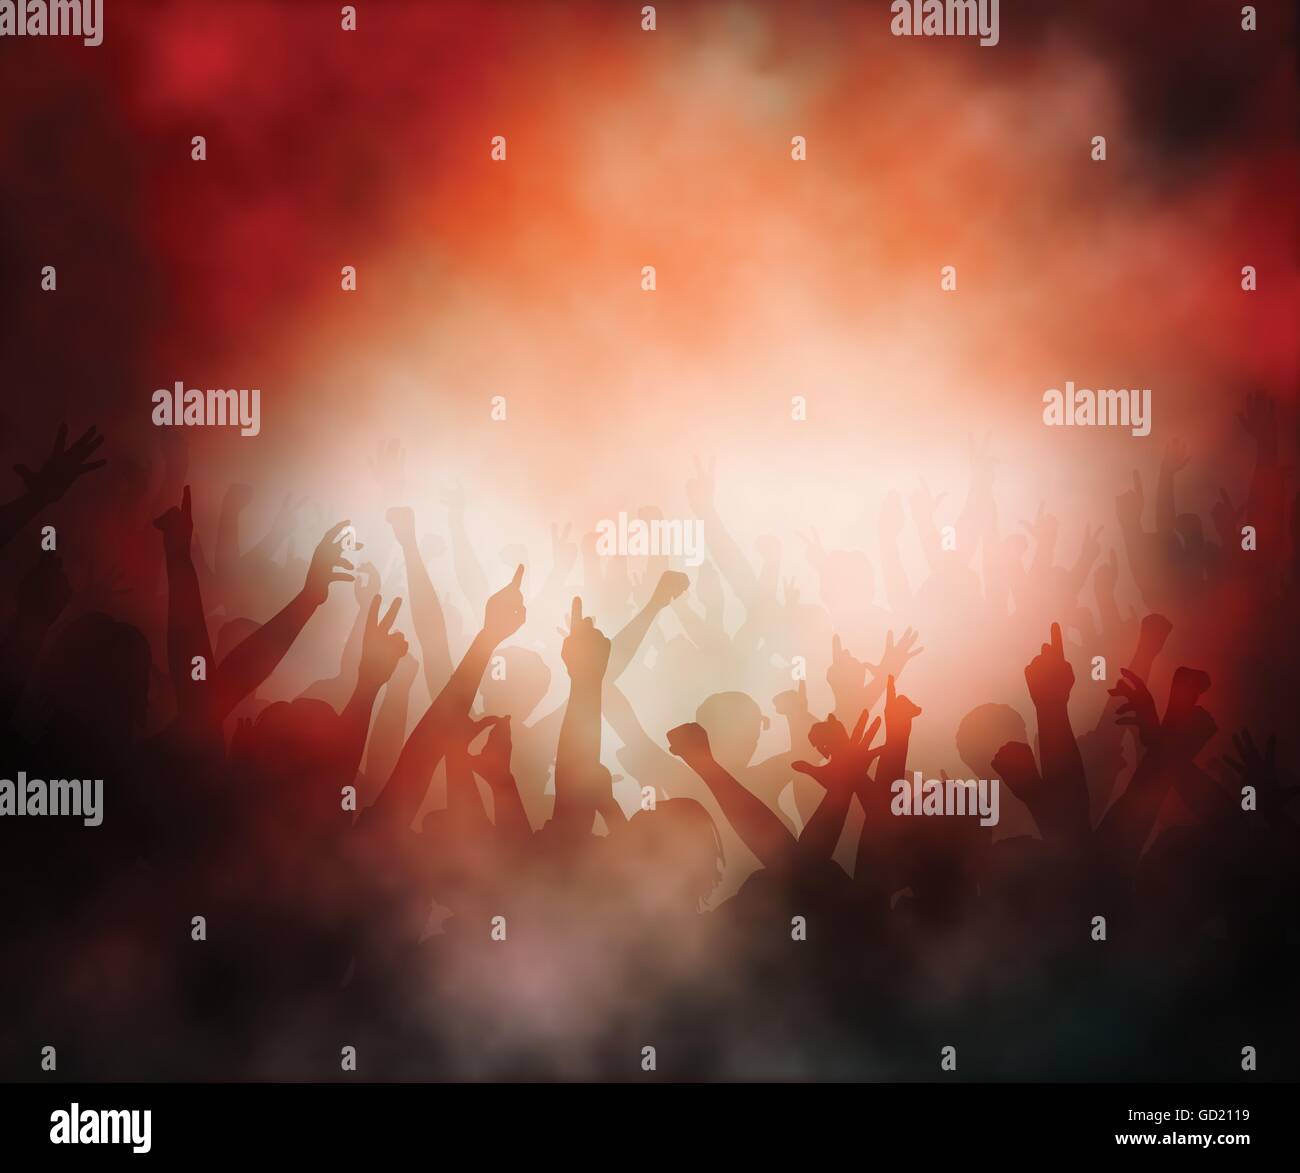 Editierbare Vektor-Illustration von einer Menschenmenge in einer rauchigen Konzertatmosphäre mit Farbverlauf Netze erstellt Stock Vektor